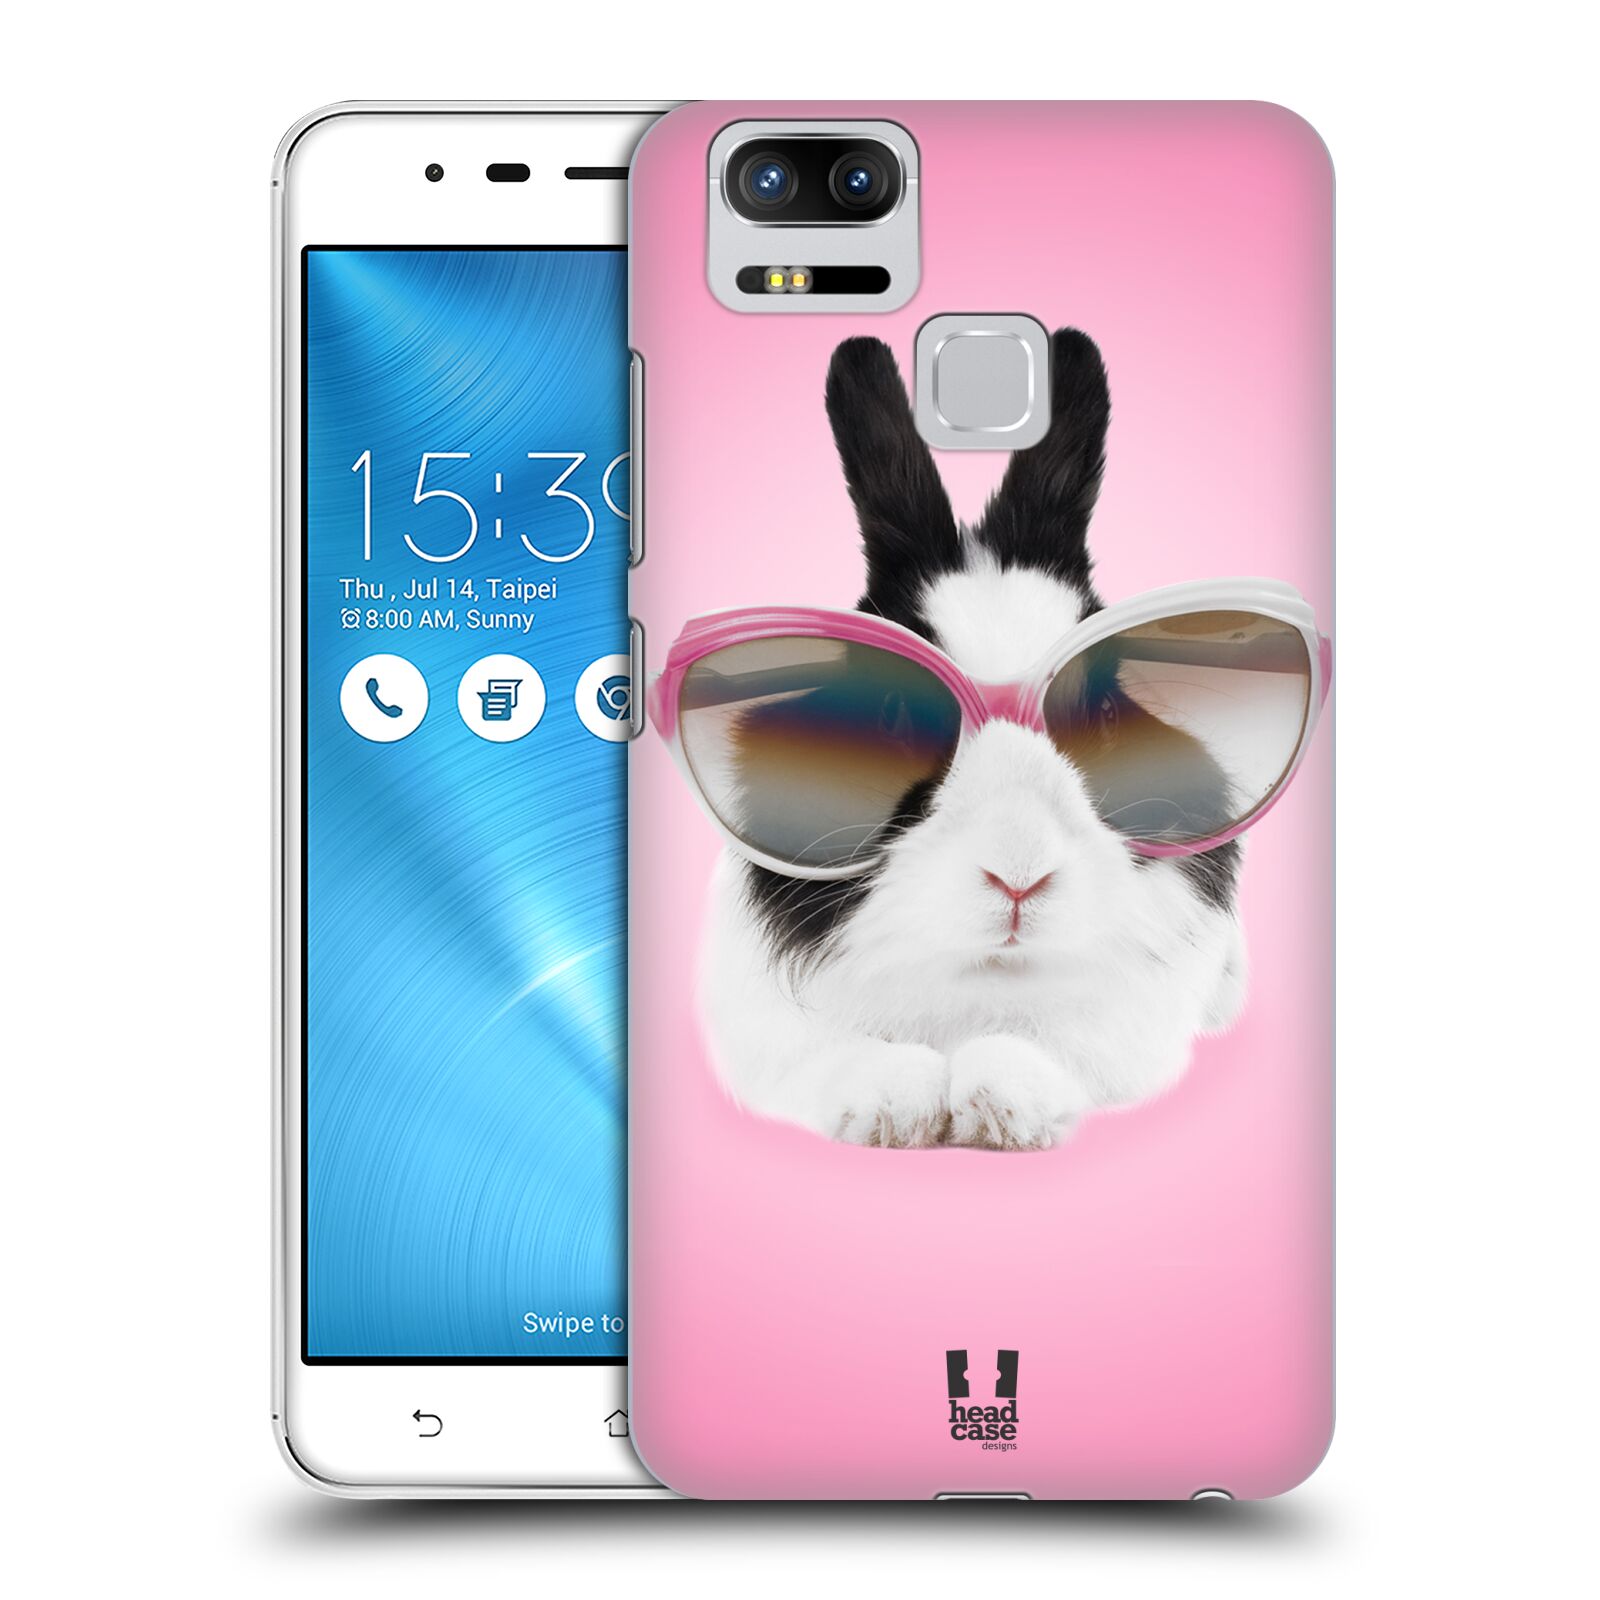 HEAD CASE plastový obal na mobil Asus Zenfone 3 Zoom ZE553KL vzor Legrační zvířátka roztomilý králíček s brýlemi růžová